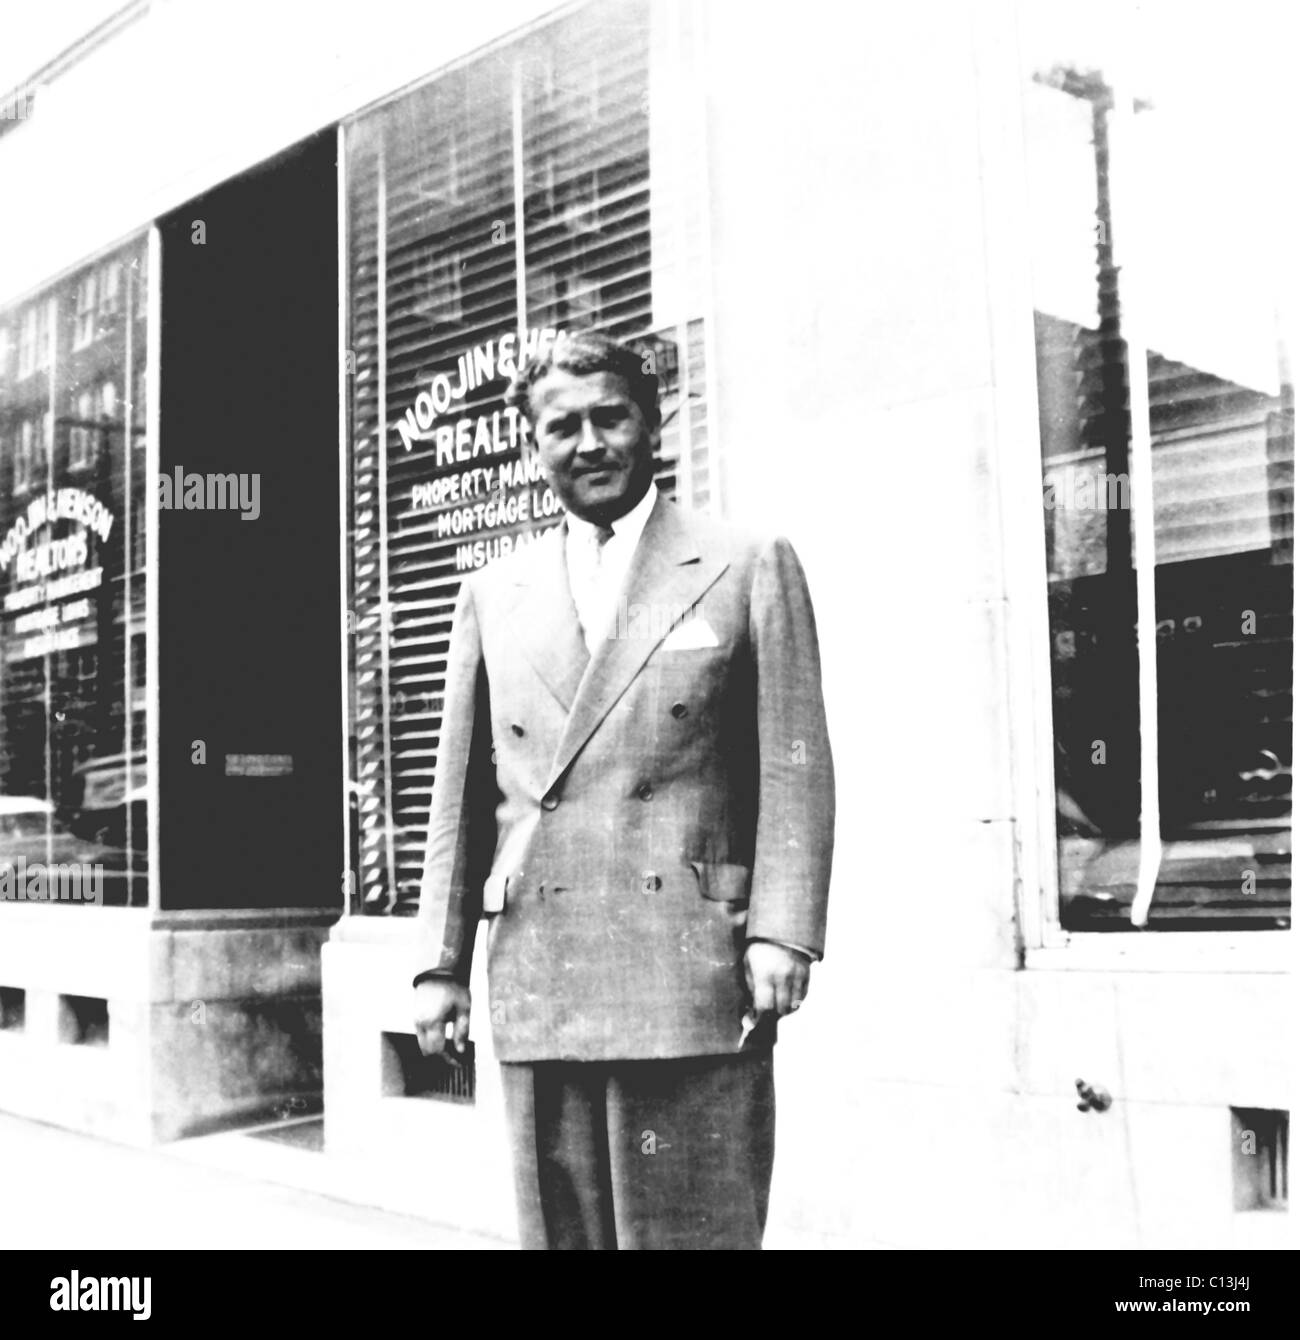 Wernher von Braun (1912-1977), in Huntsville, Alabama, November 1, 1957. ©Nasa/Courtesy Everett Collection Stock Photo